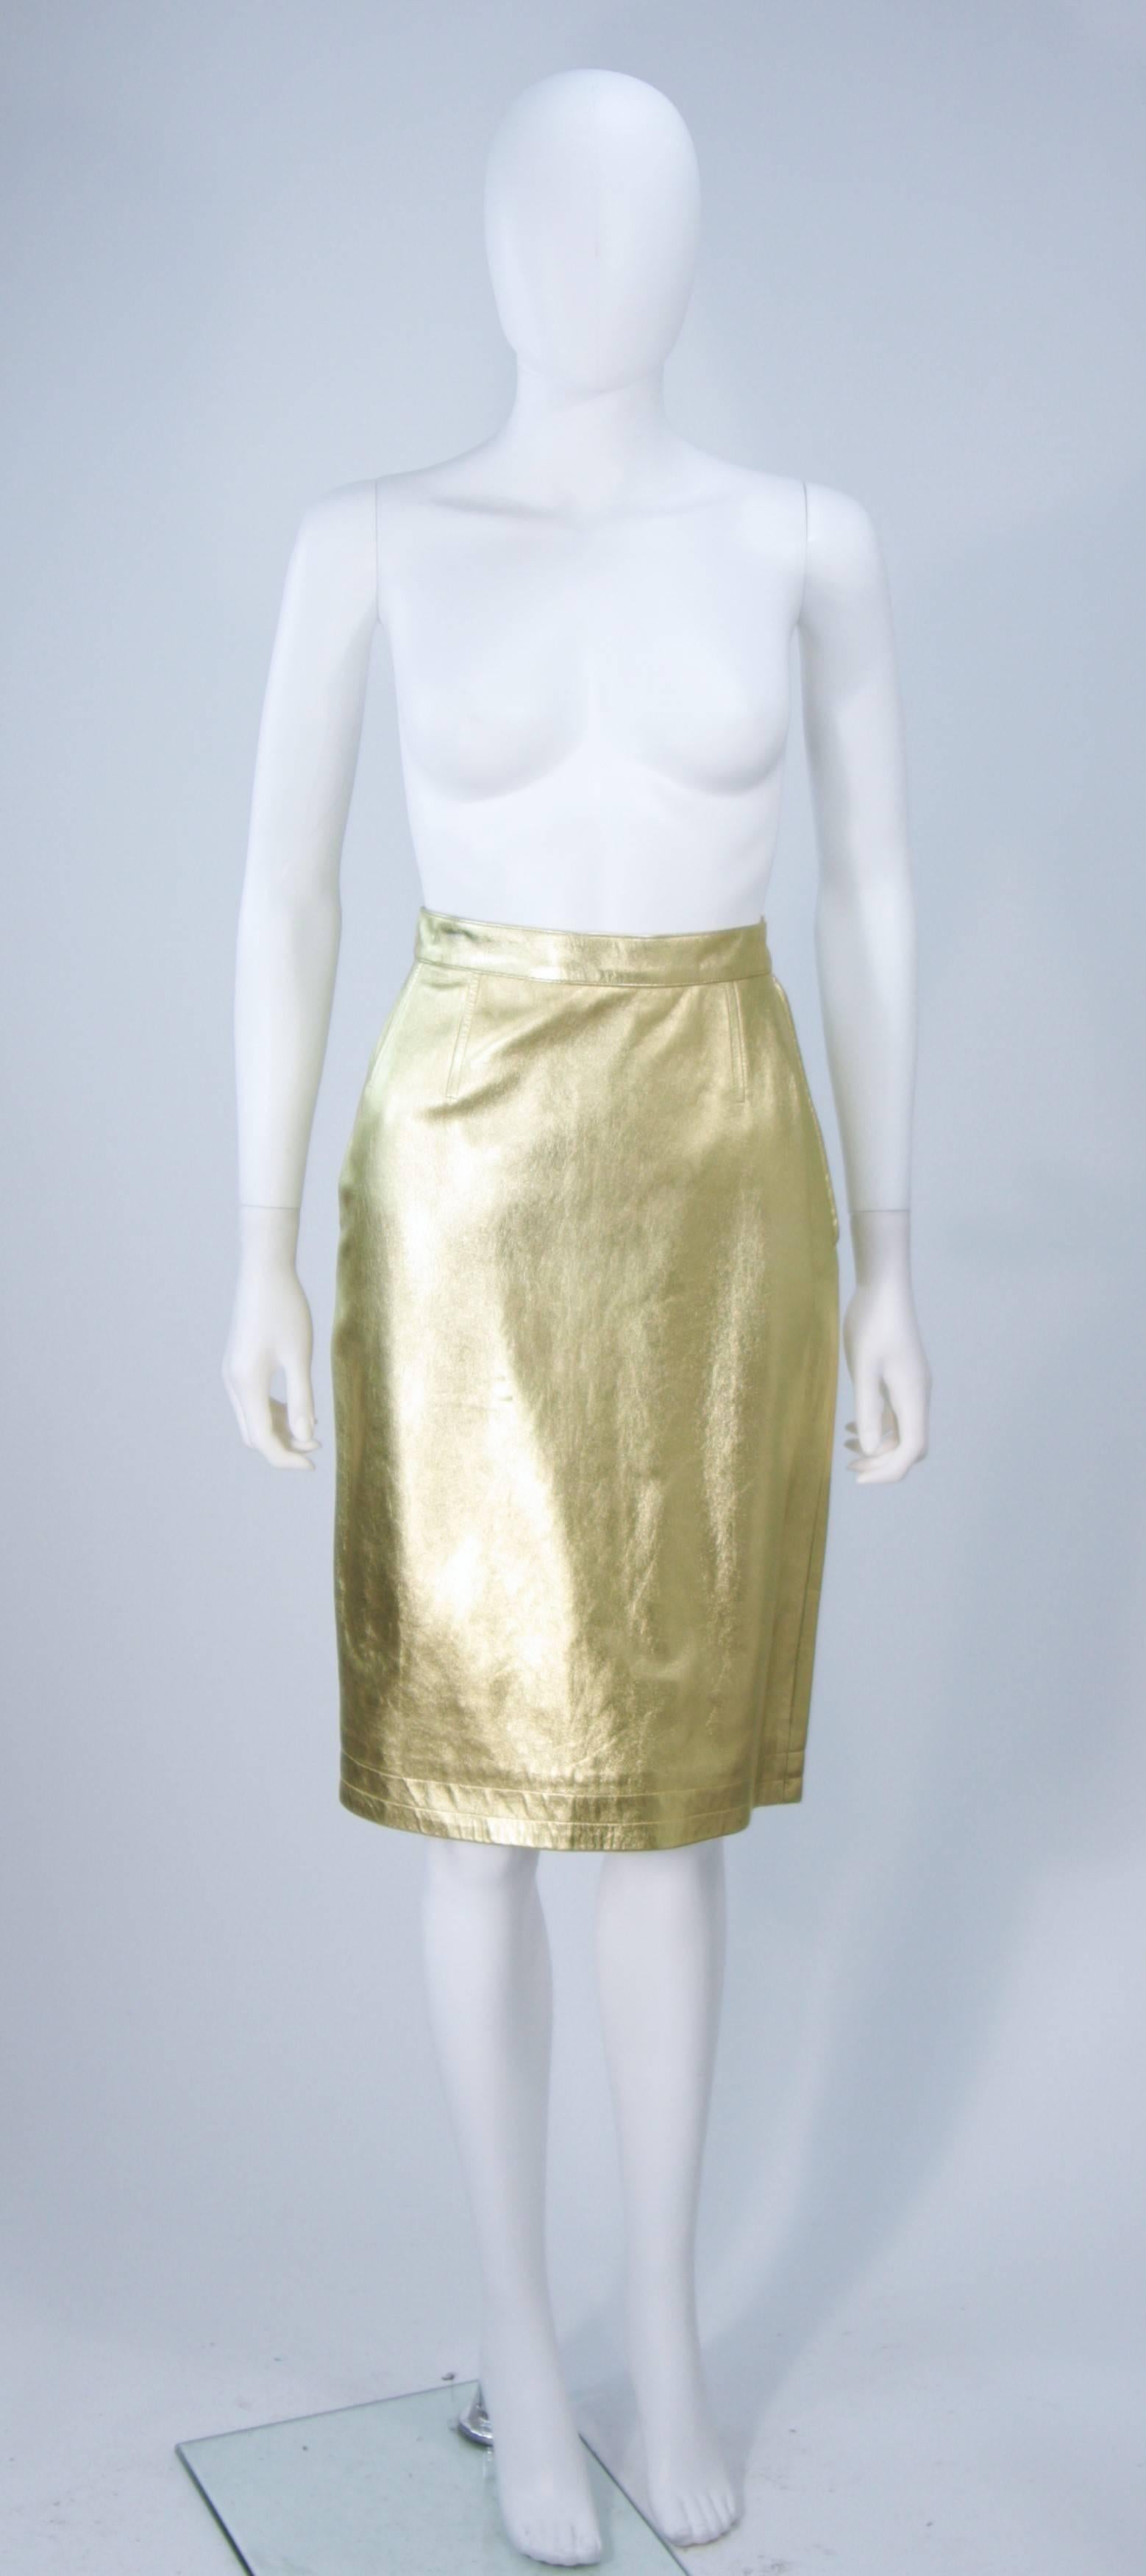  Cette jupe Yves Saint Laurent est composée d'un cuir métallisé or. Il est doté d'une fermeture à glissière latérale et de pinces surpiquées. Vintage, en excellent état.

Cette jupe YSL en cuir doré provient d'une vaste collection que j'ai acquise